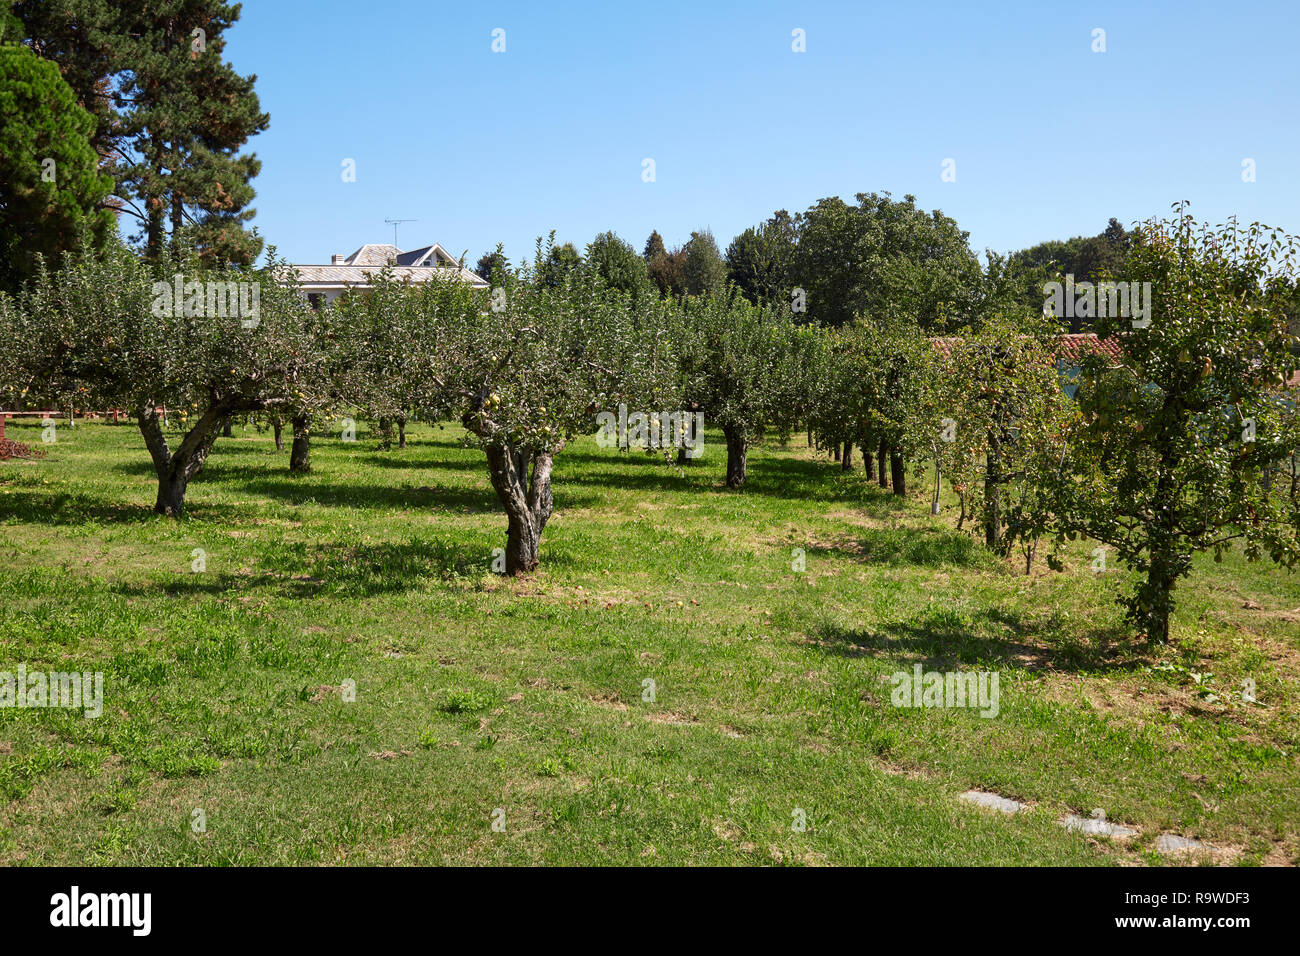 Meli orchard in una soleggiata giornata estiva, cielo blu chiaro Foto Stock